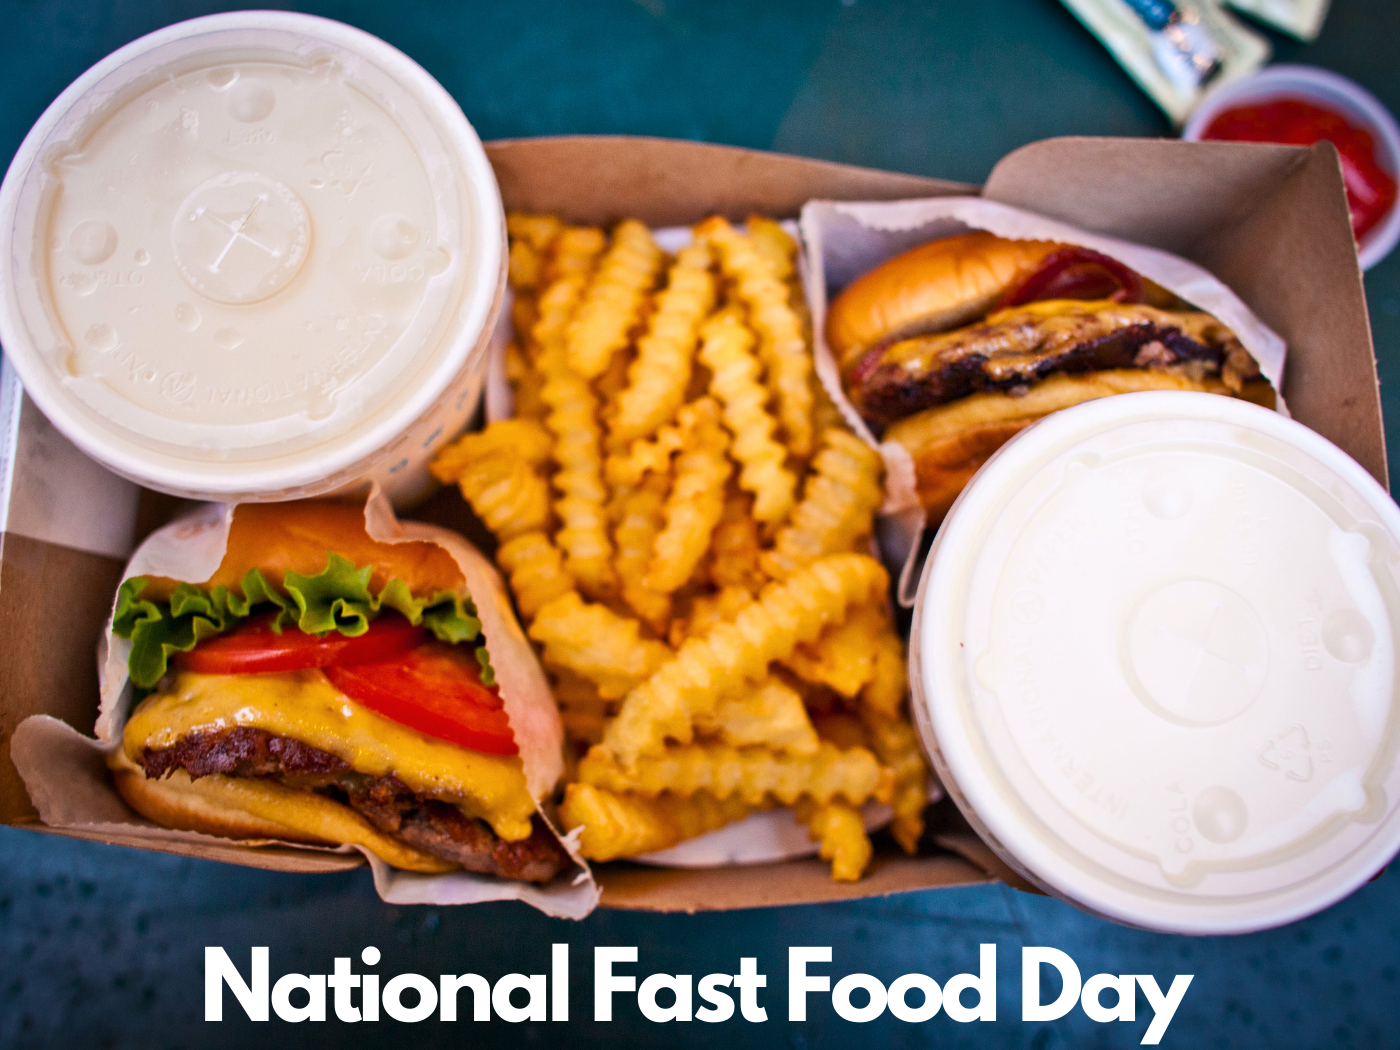 https://s.calendarr.com/upload/69/bd/national-fast-food-day-f.png